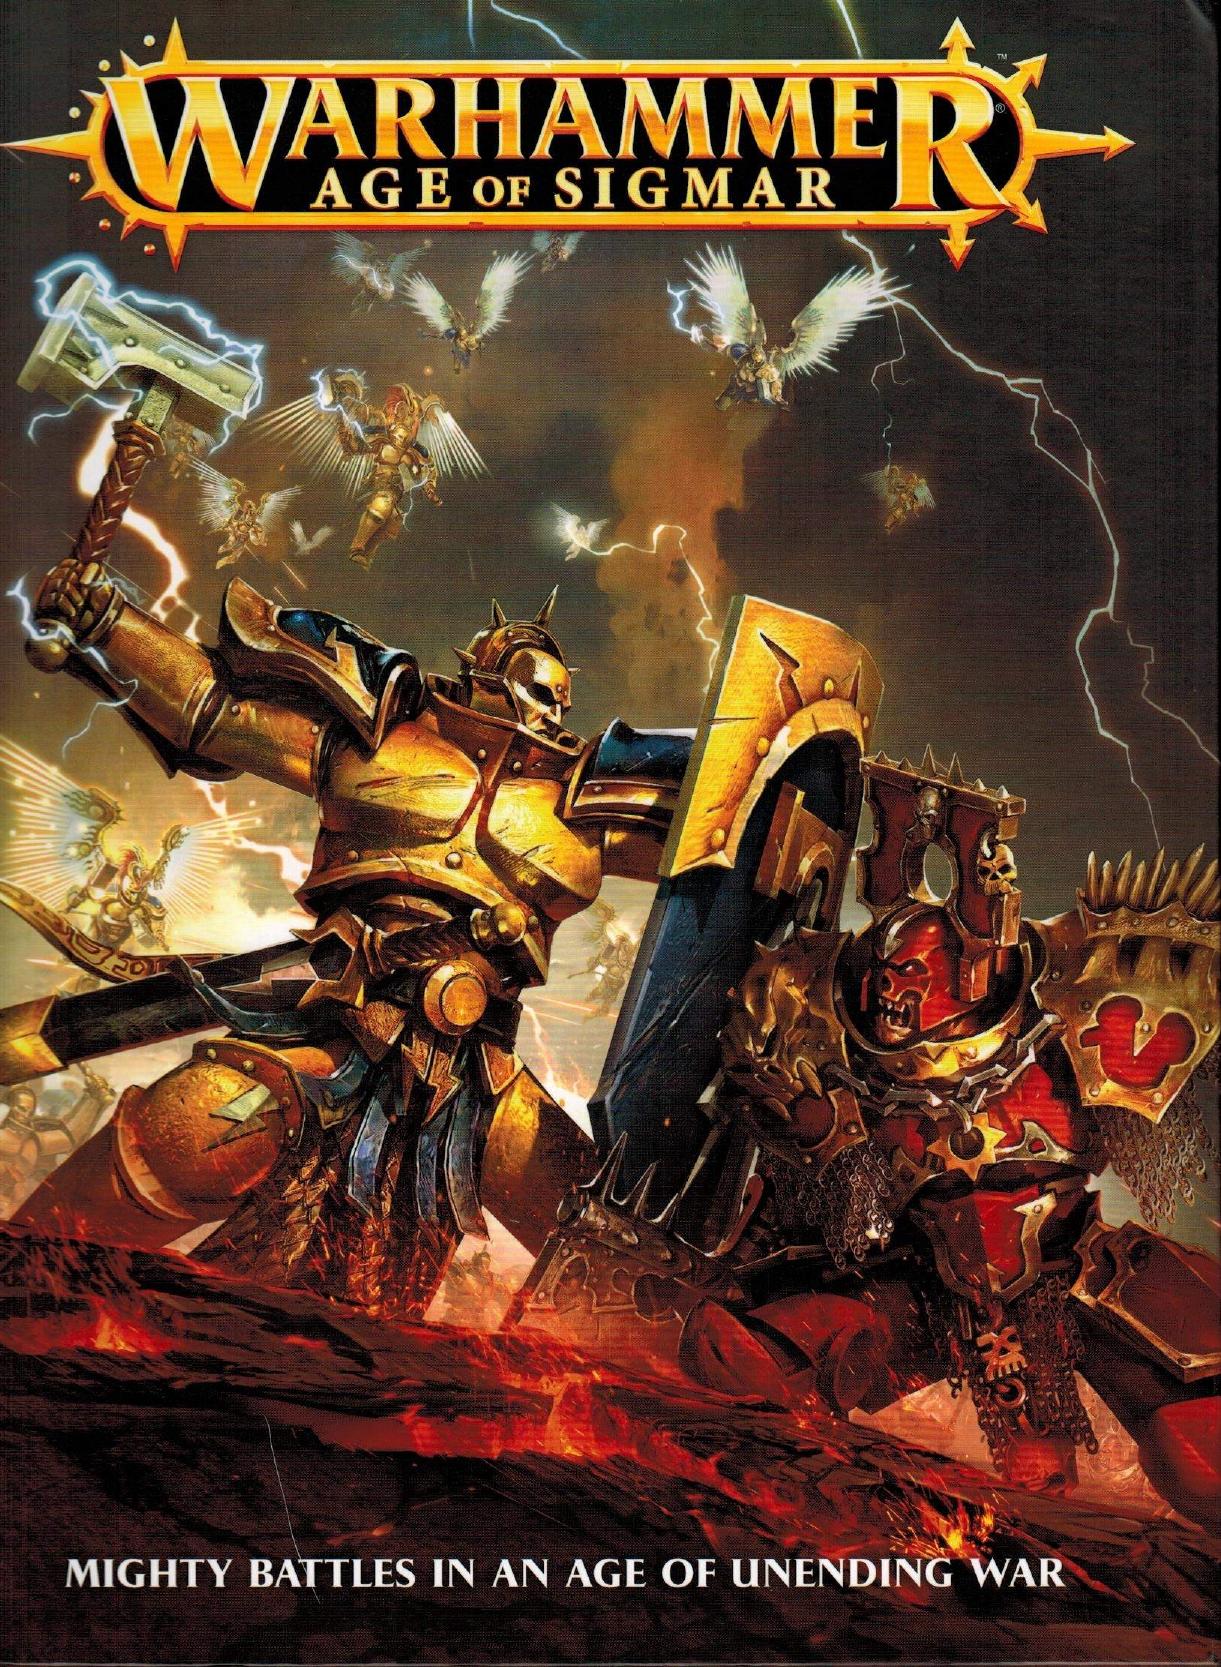 Warhammer Age of Sigmar vol1